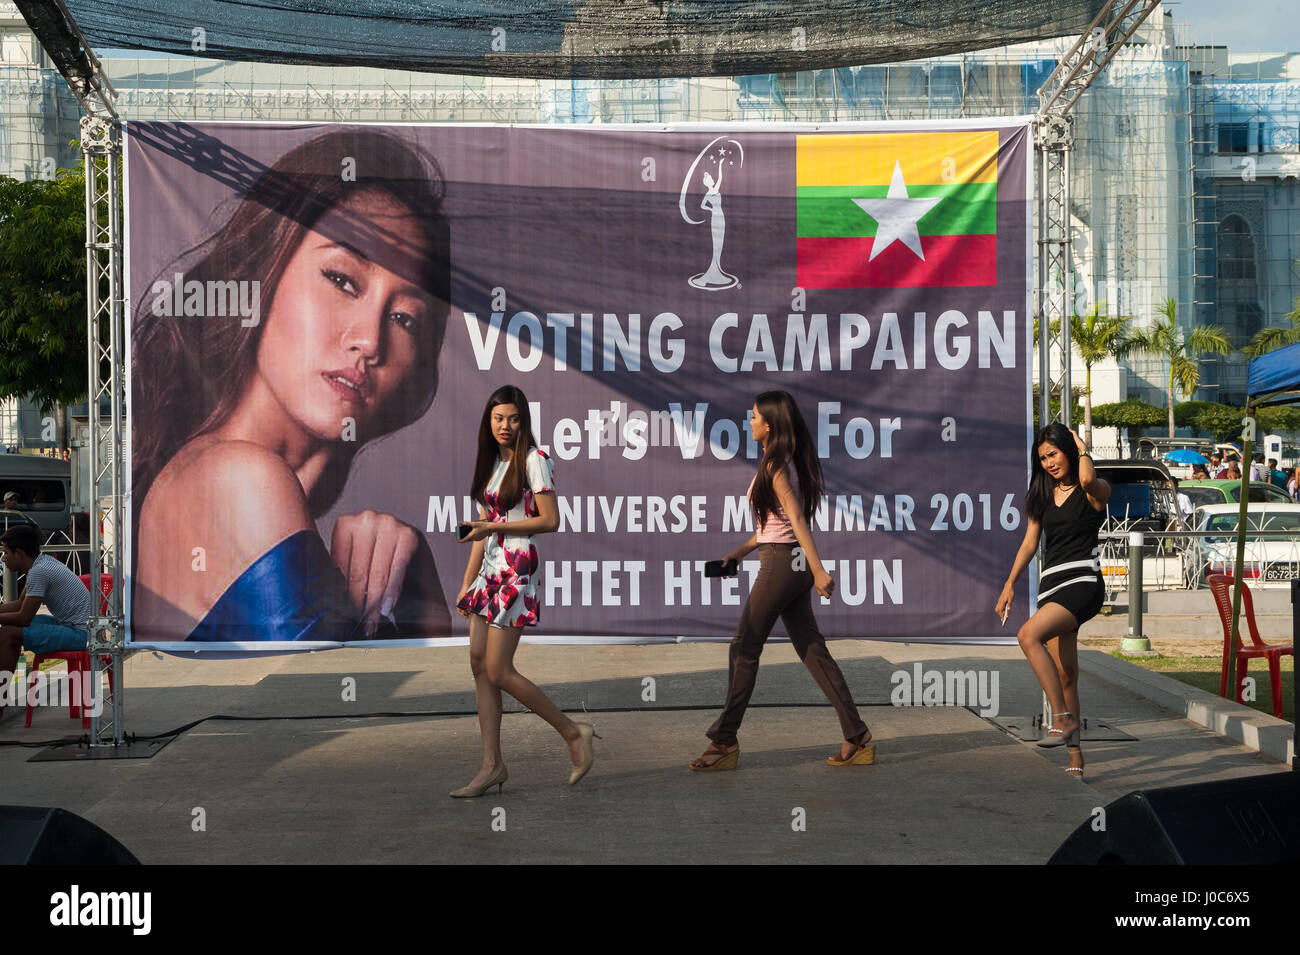 27.01.2017, Yangon, République de l'Union du Myanmar, en Asie - les participants d'un concours de beauté se rencontrent sur une scène à l'Mahabandula Park. Banque D'Images